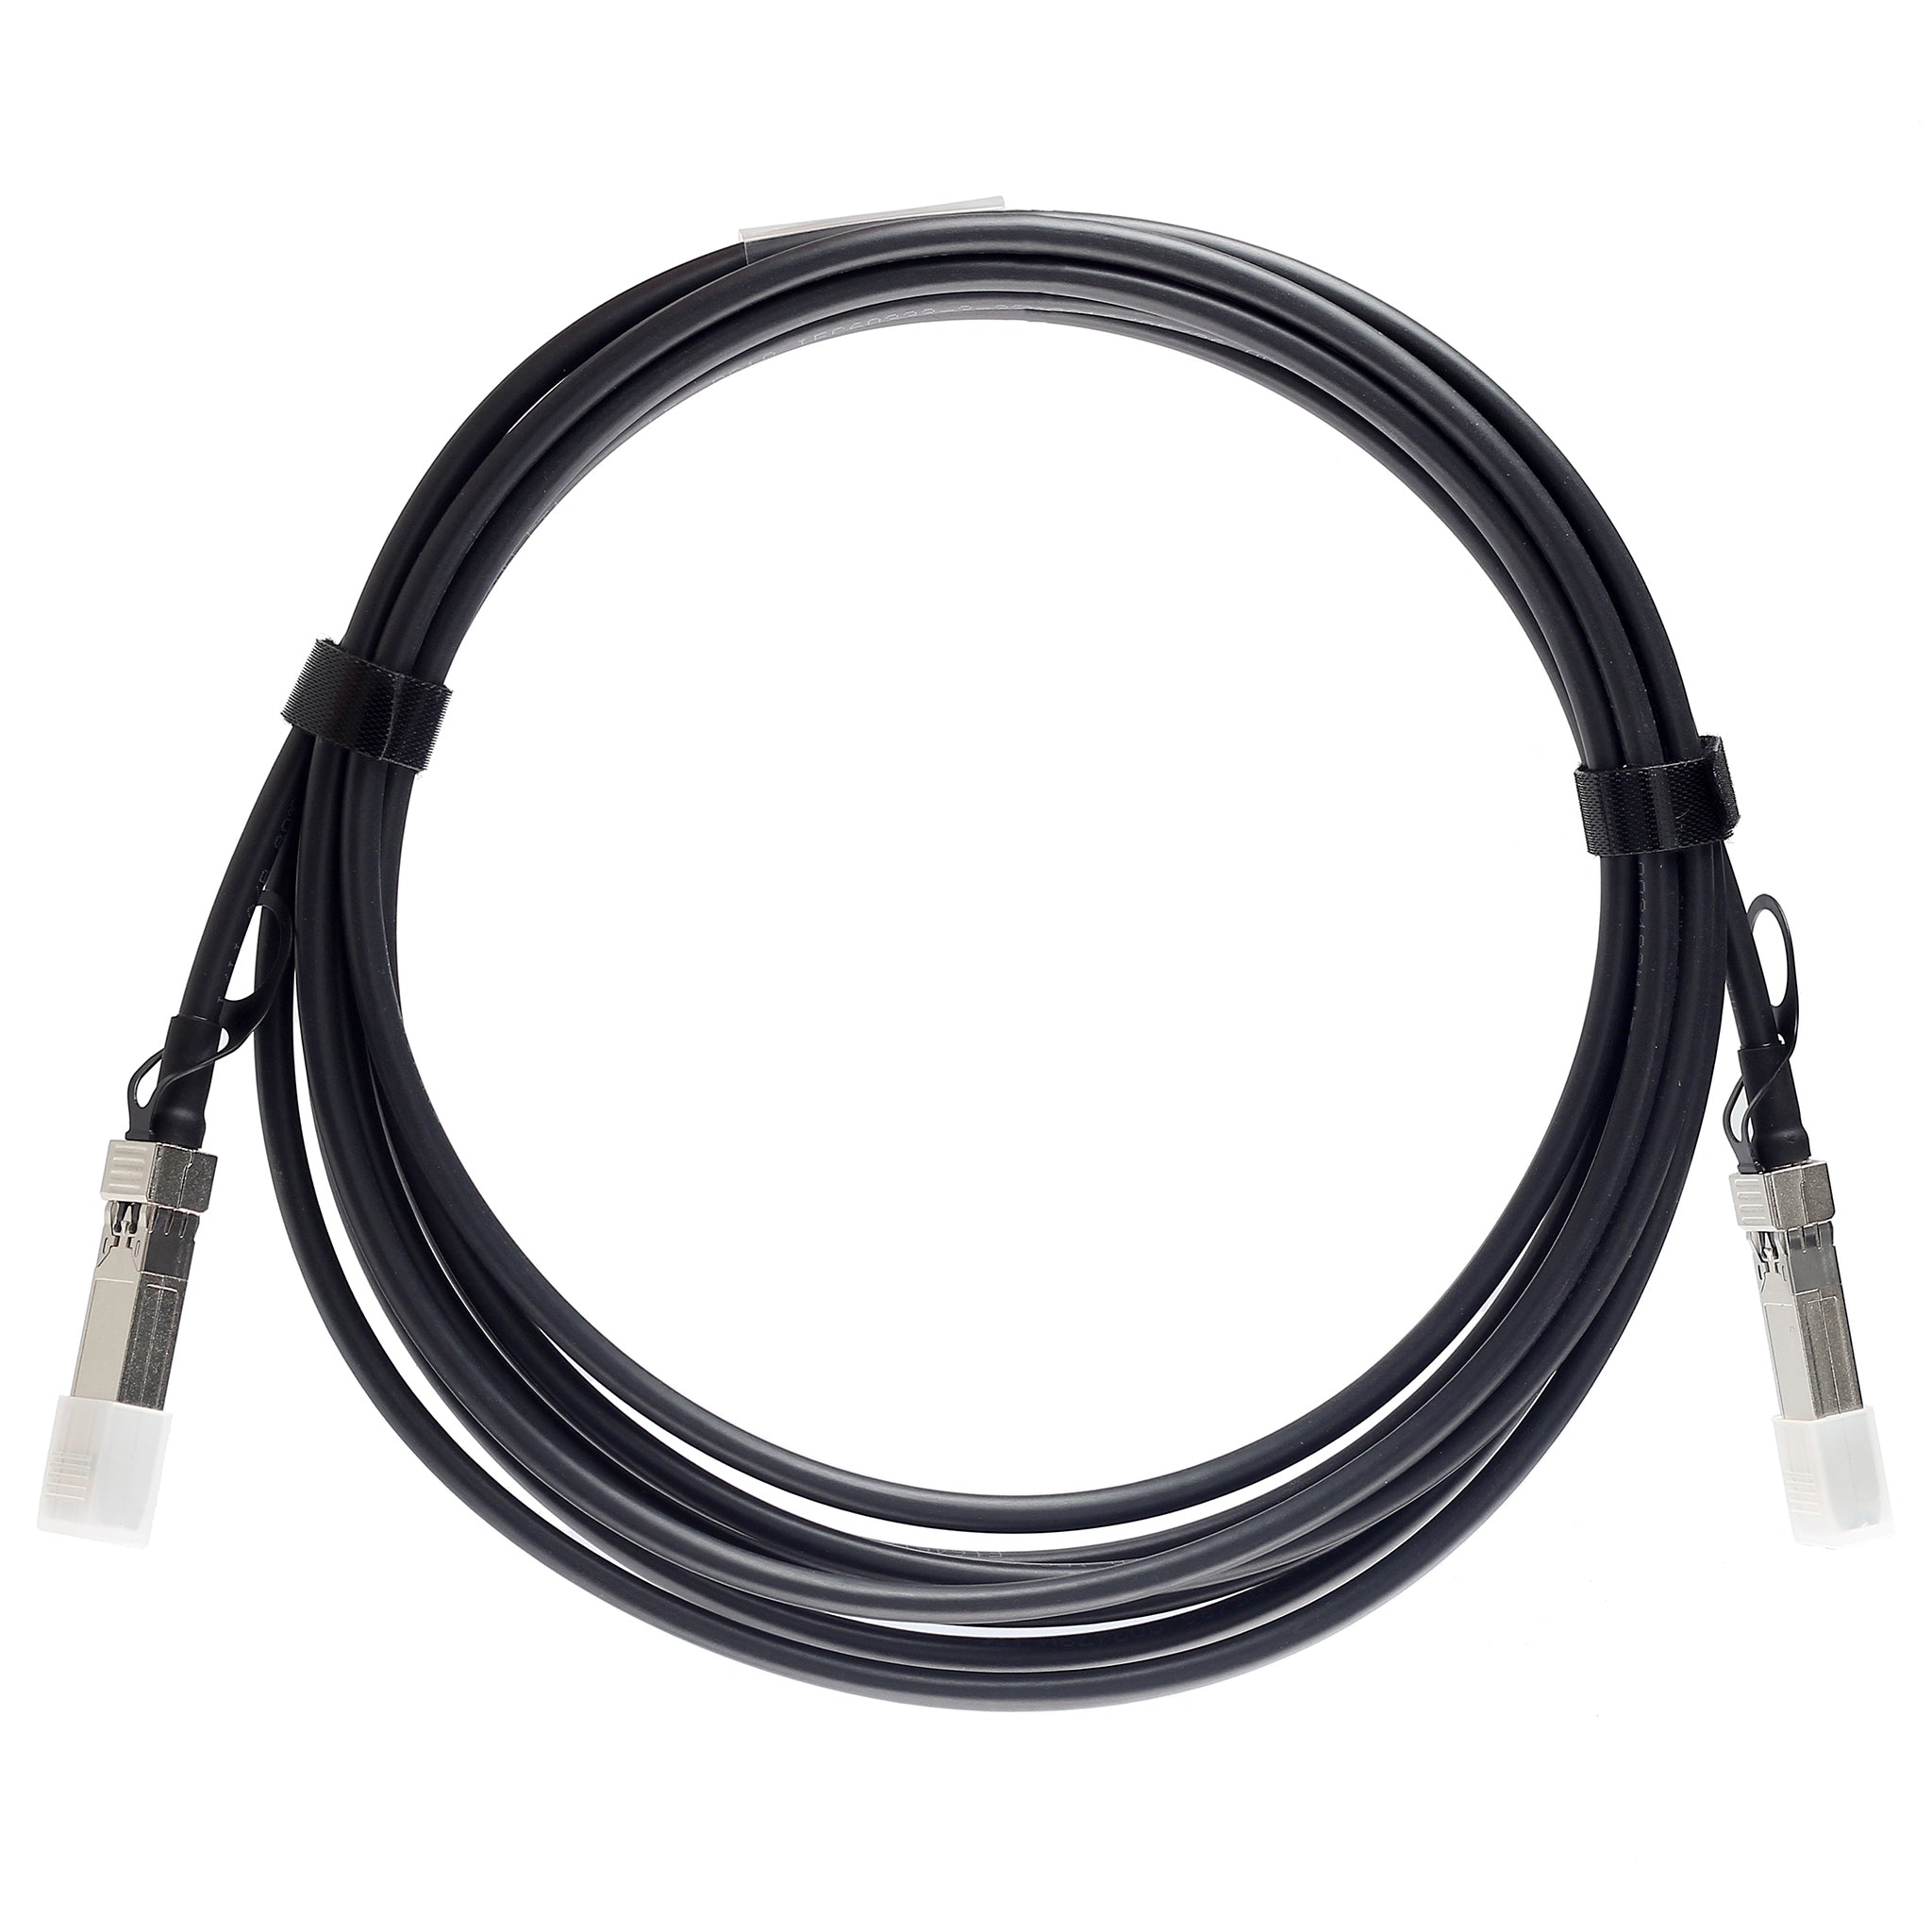 QSFP-40G-C3M-C - 3m Alcatel-Lucent (Nokia) Compatible 40G QSFP+ Passive Direct Attach Copper Twinax Cable